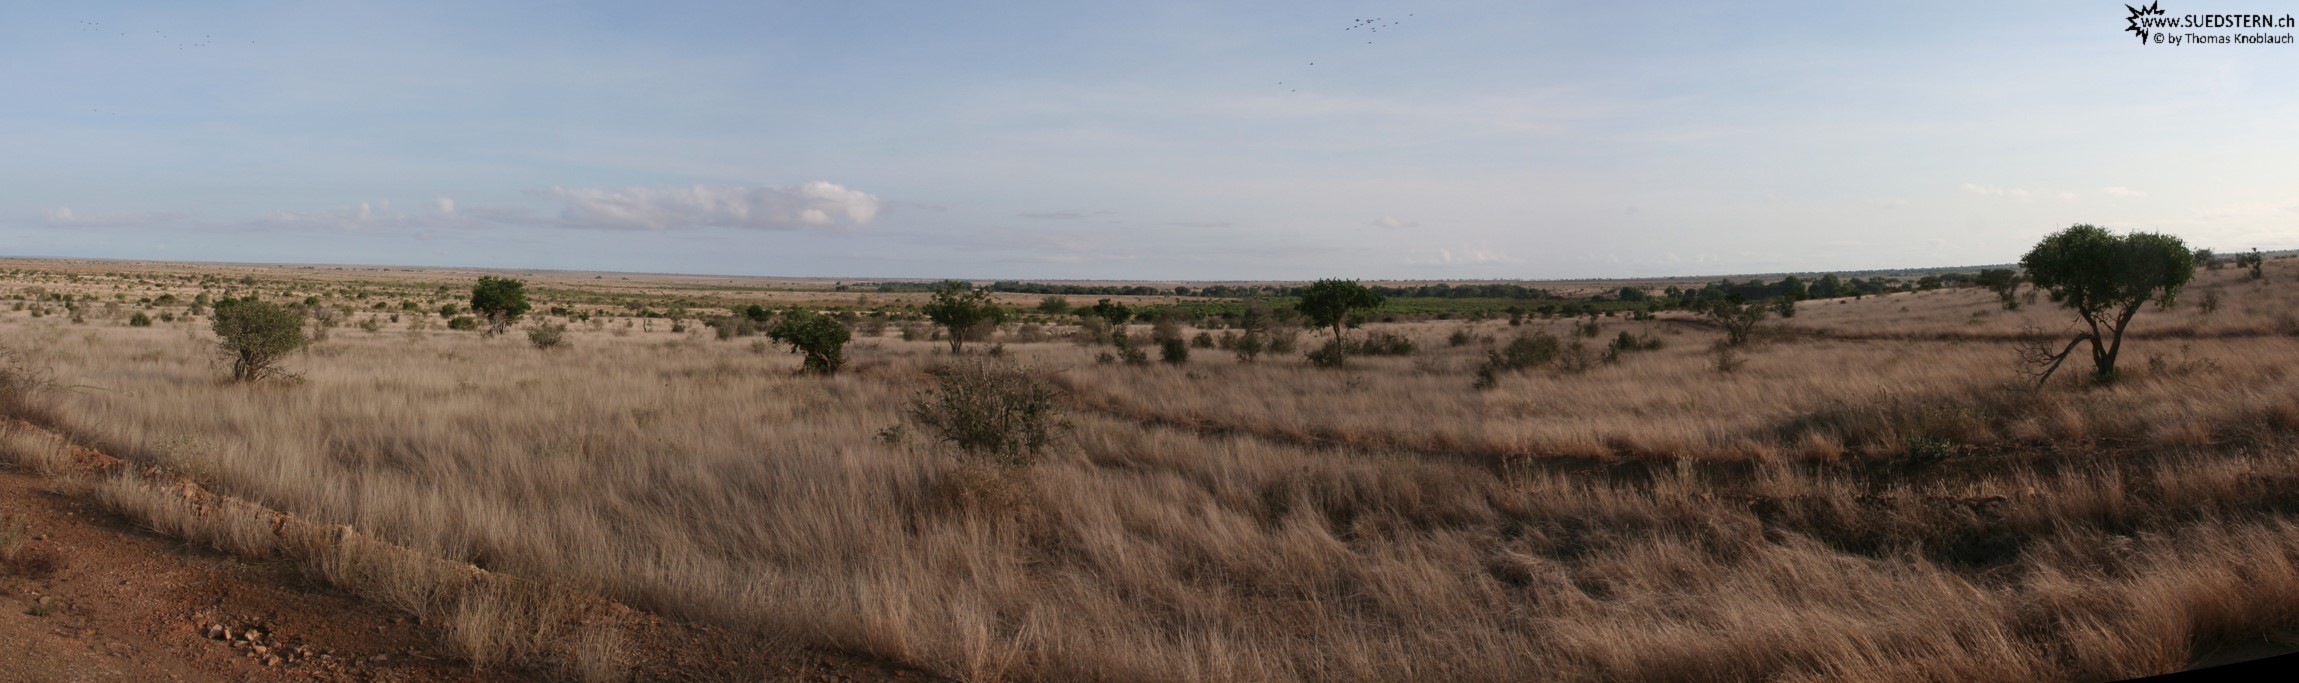 2007-04-10 - Kenya - Tsavo East Panorama